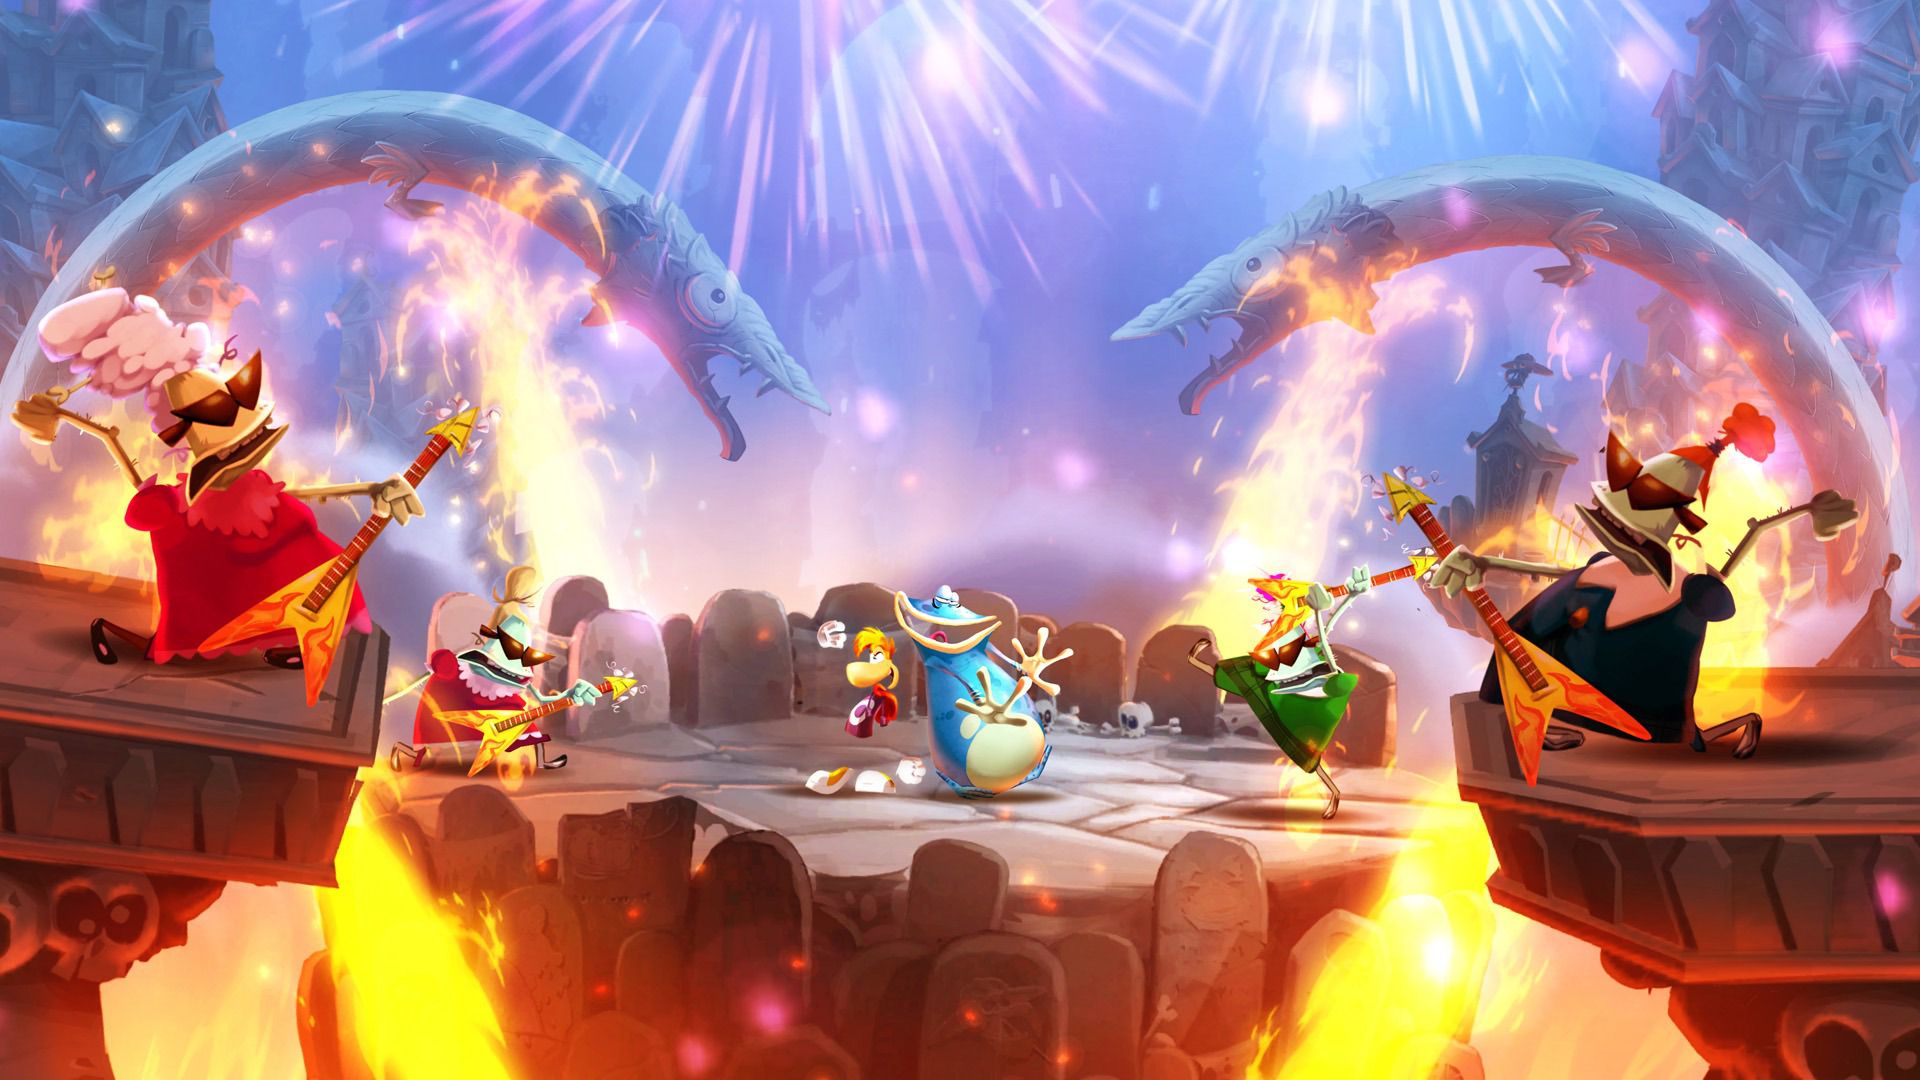 Rayman et Globox posent sur une plateforme de pierre tandis qu'un quatuor de guitares volantes jouent dans une capture d'écran